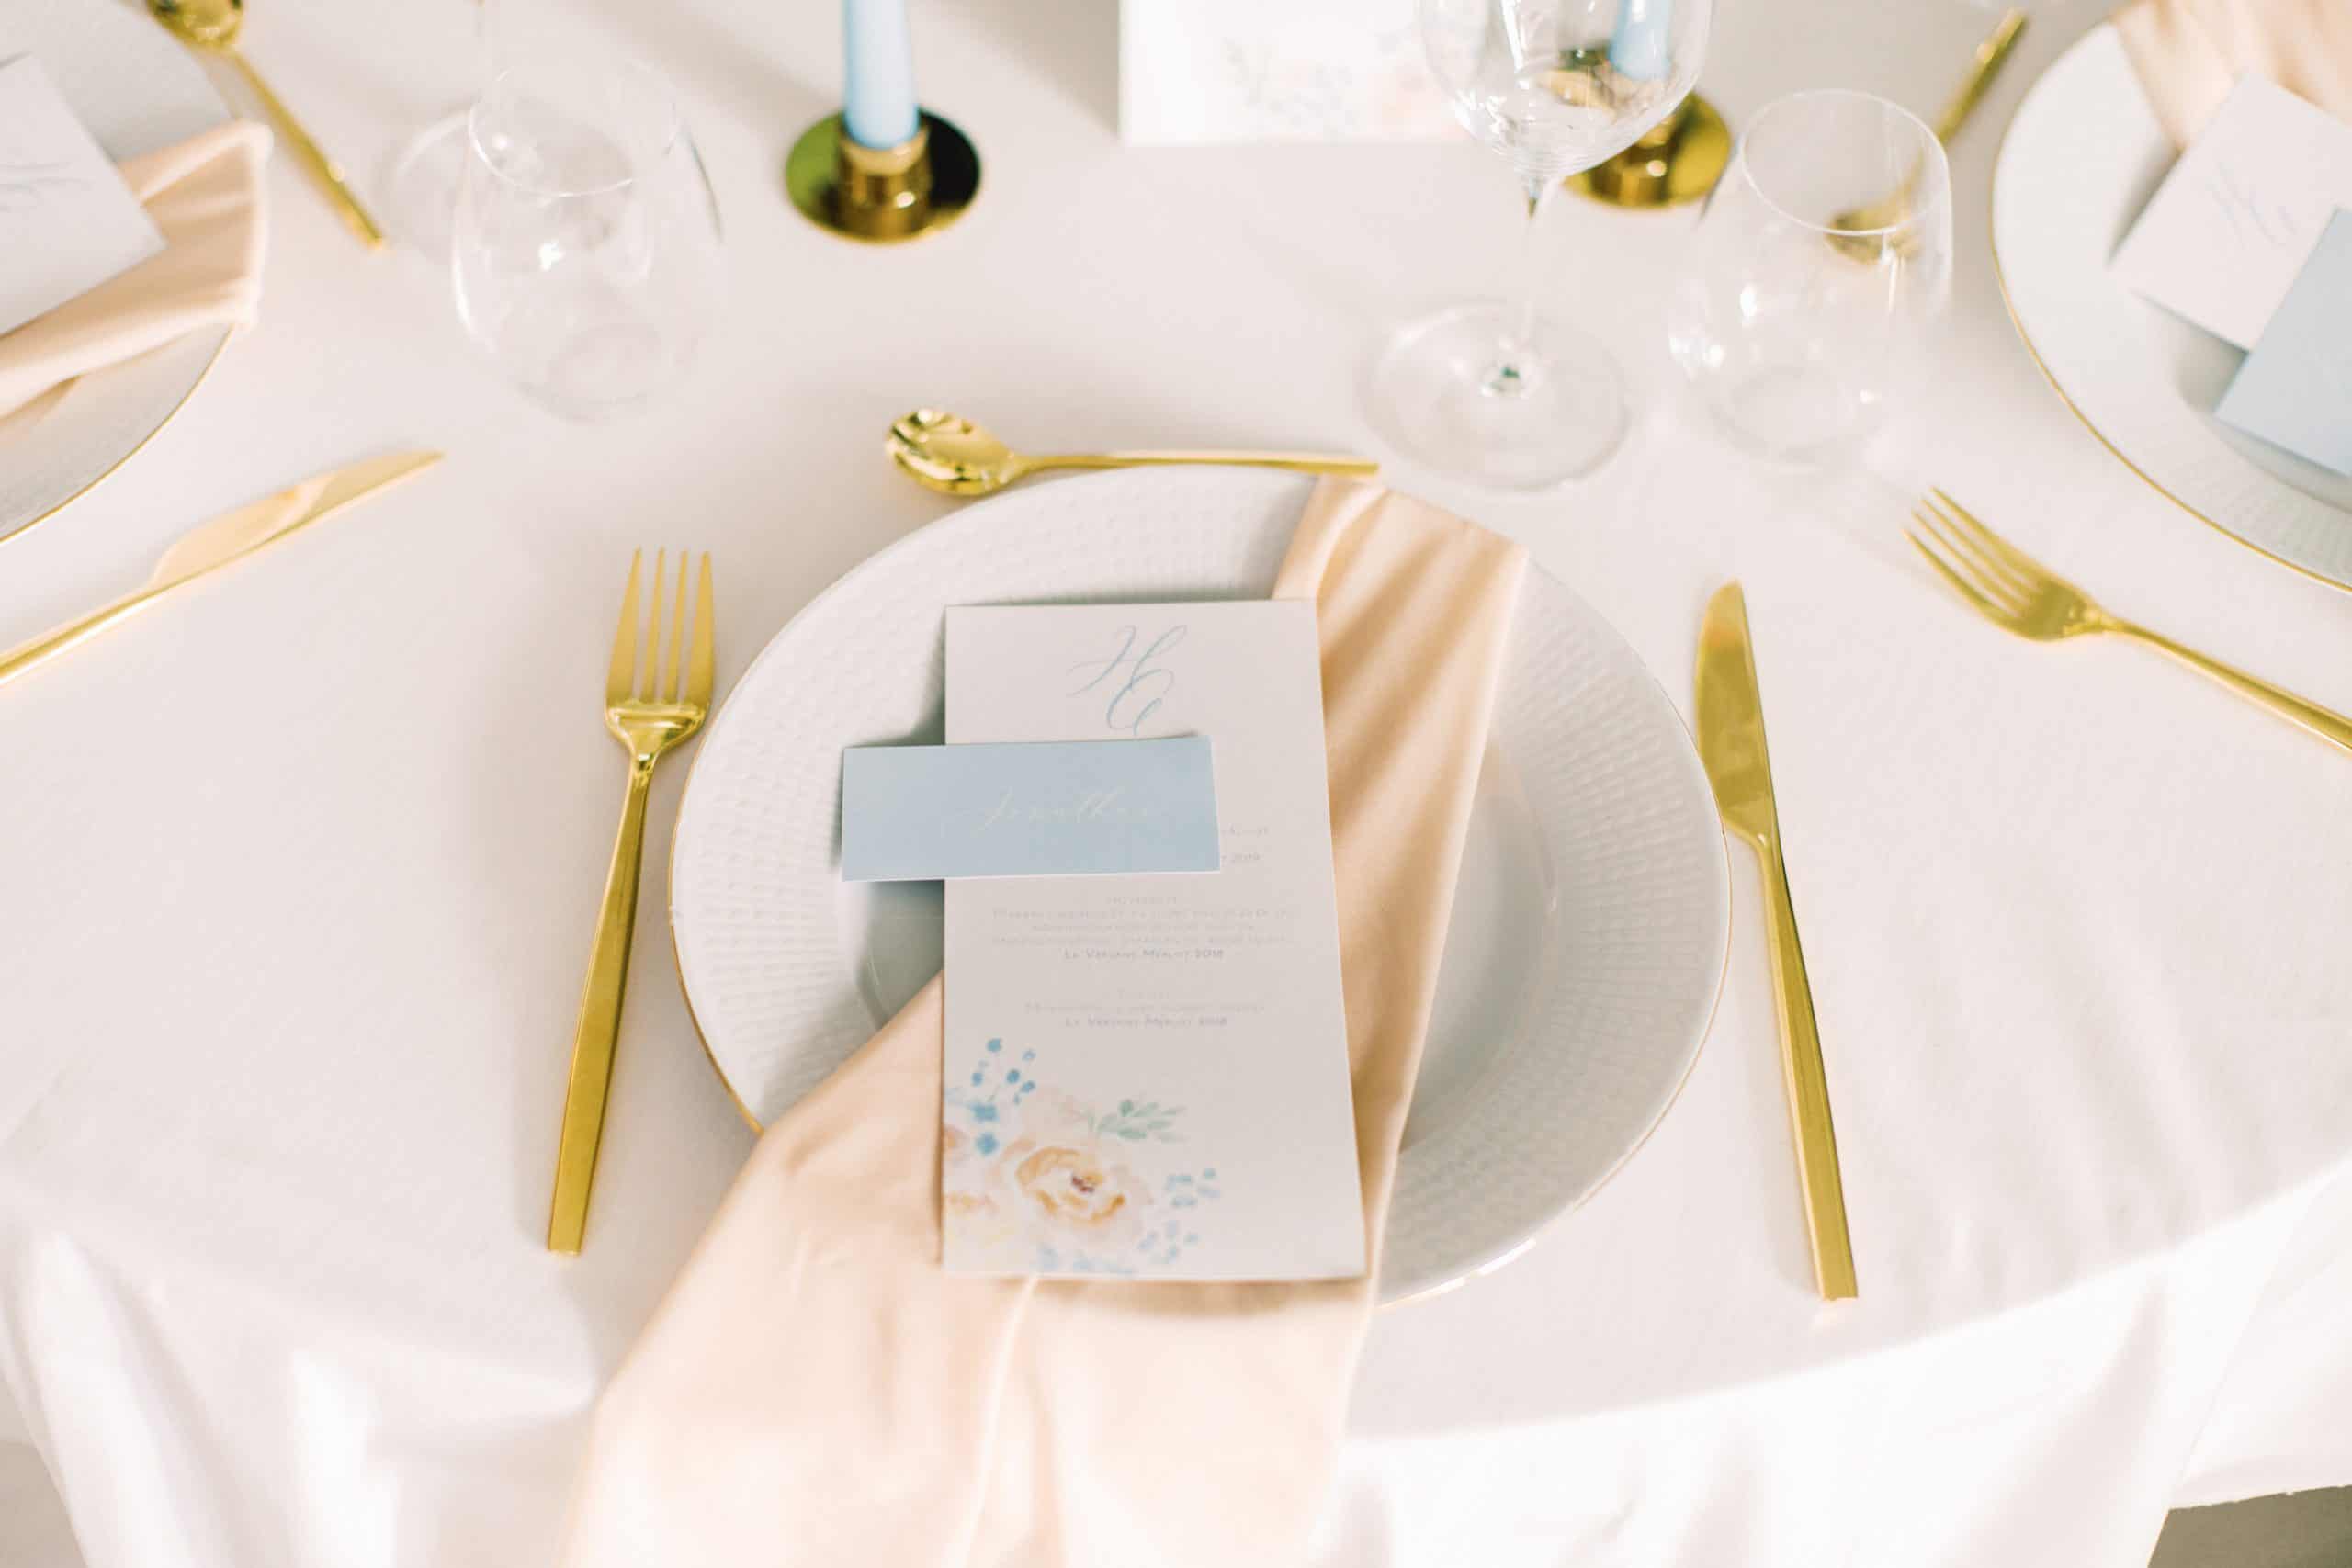 Runde tallerkener med lyseblå bordkort og gullbestikk